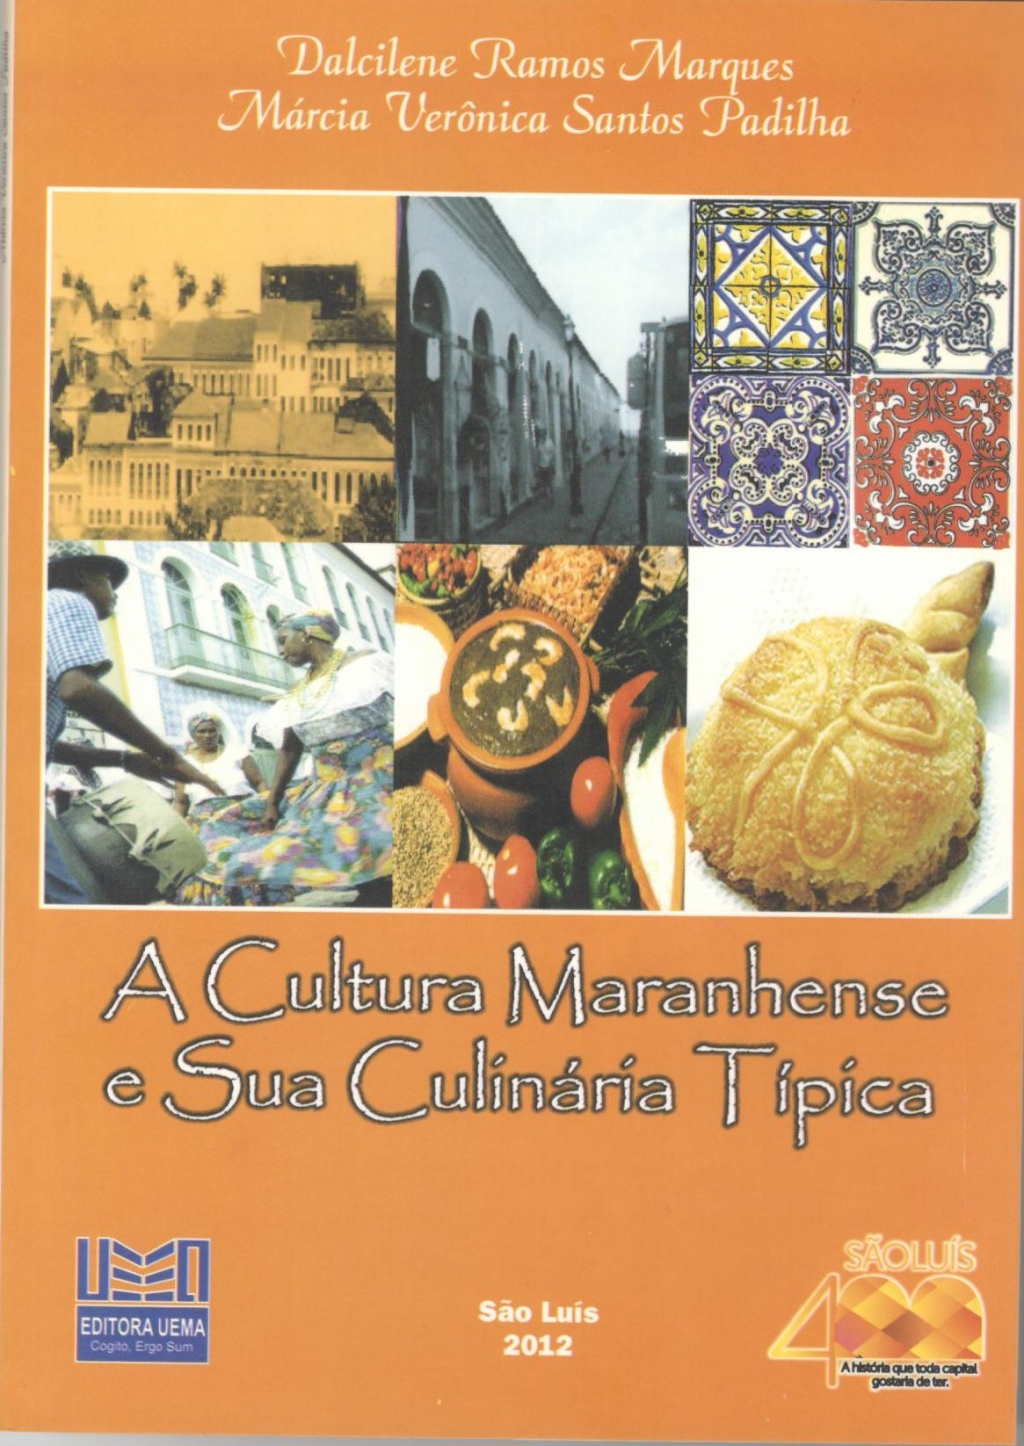 Coleção 400 Anos - A cultura Maranhense e sua culinária típica